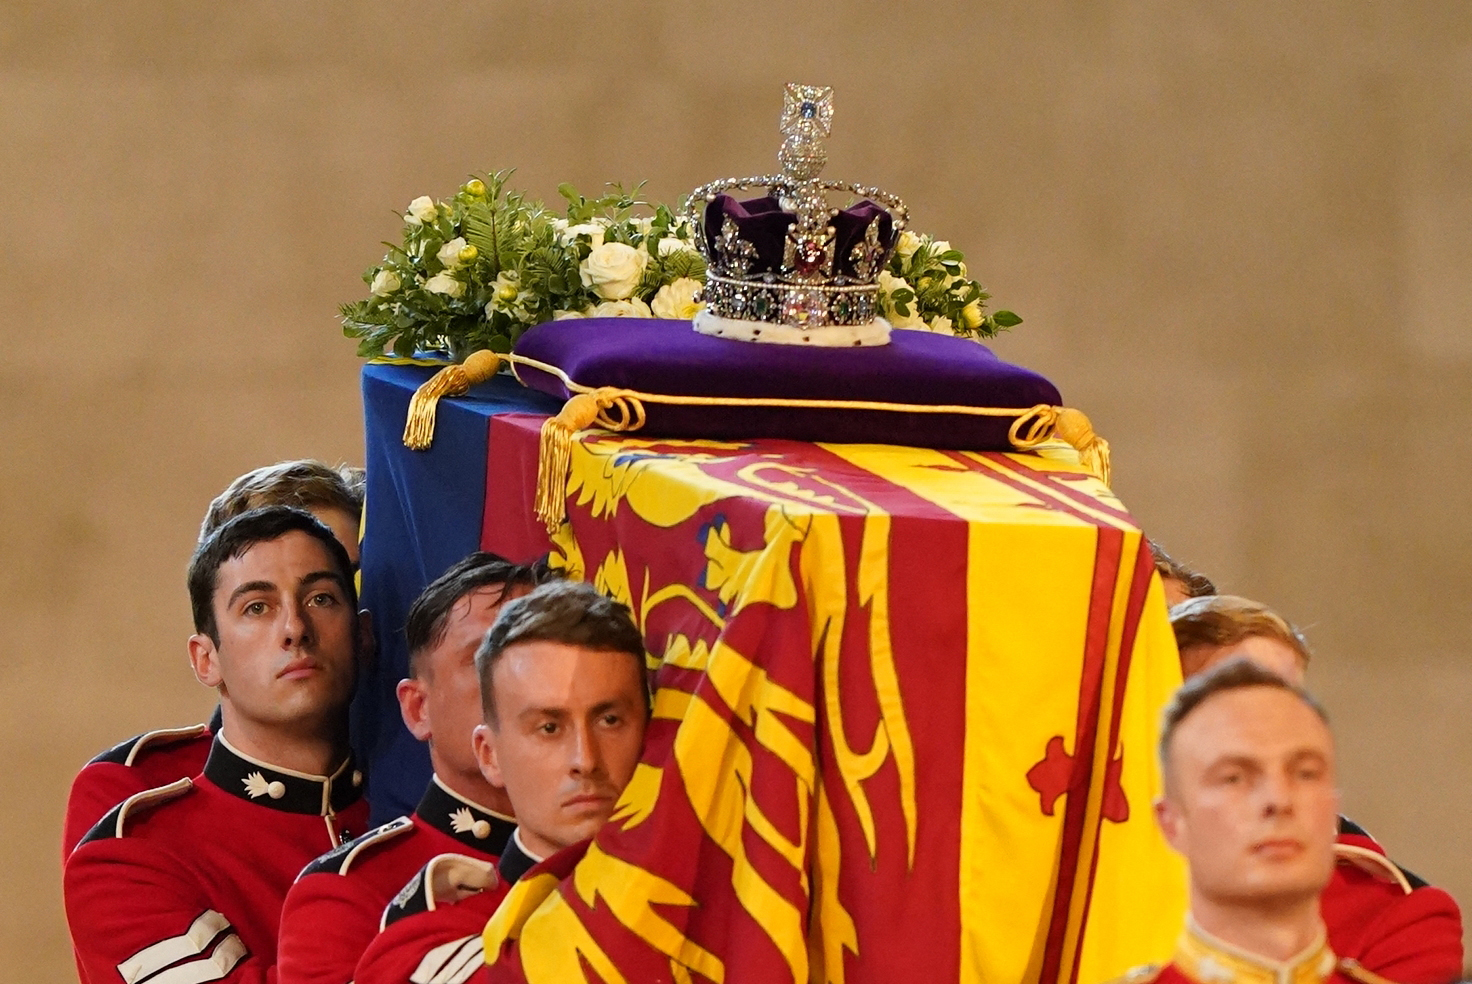 Portadores del féretro de la Compañía de la Reina en el funeral de la reina Elizabeth II en el Palacio de Westminster de Londres el 14 de septiembre de 2022 | Foto: Getty Images